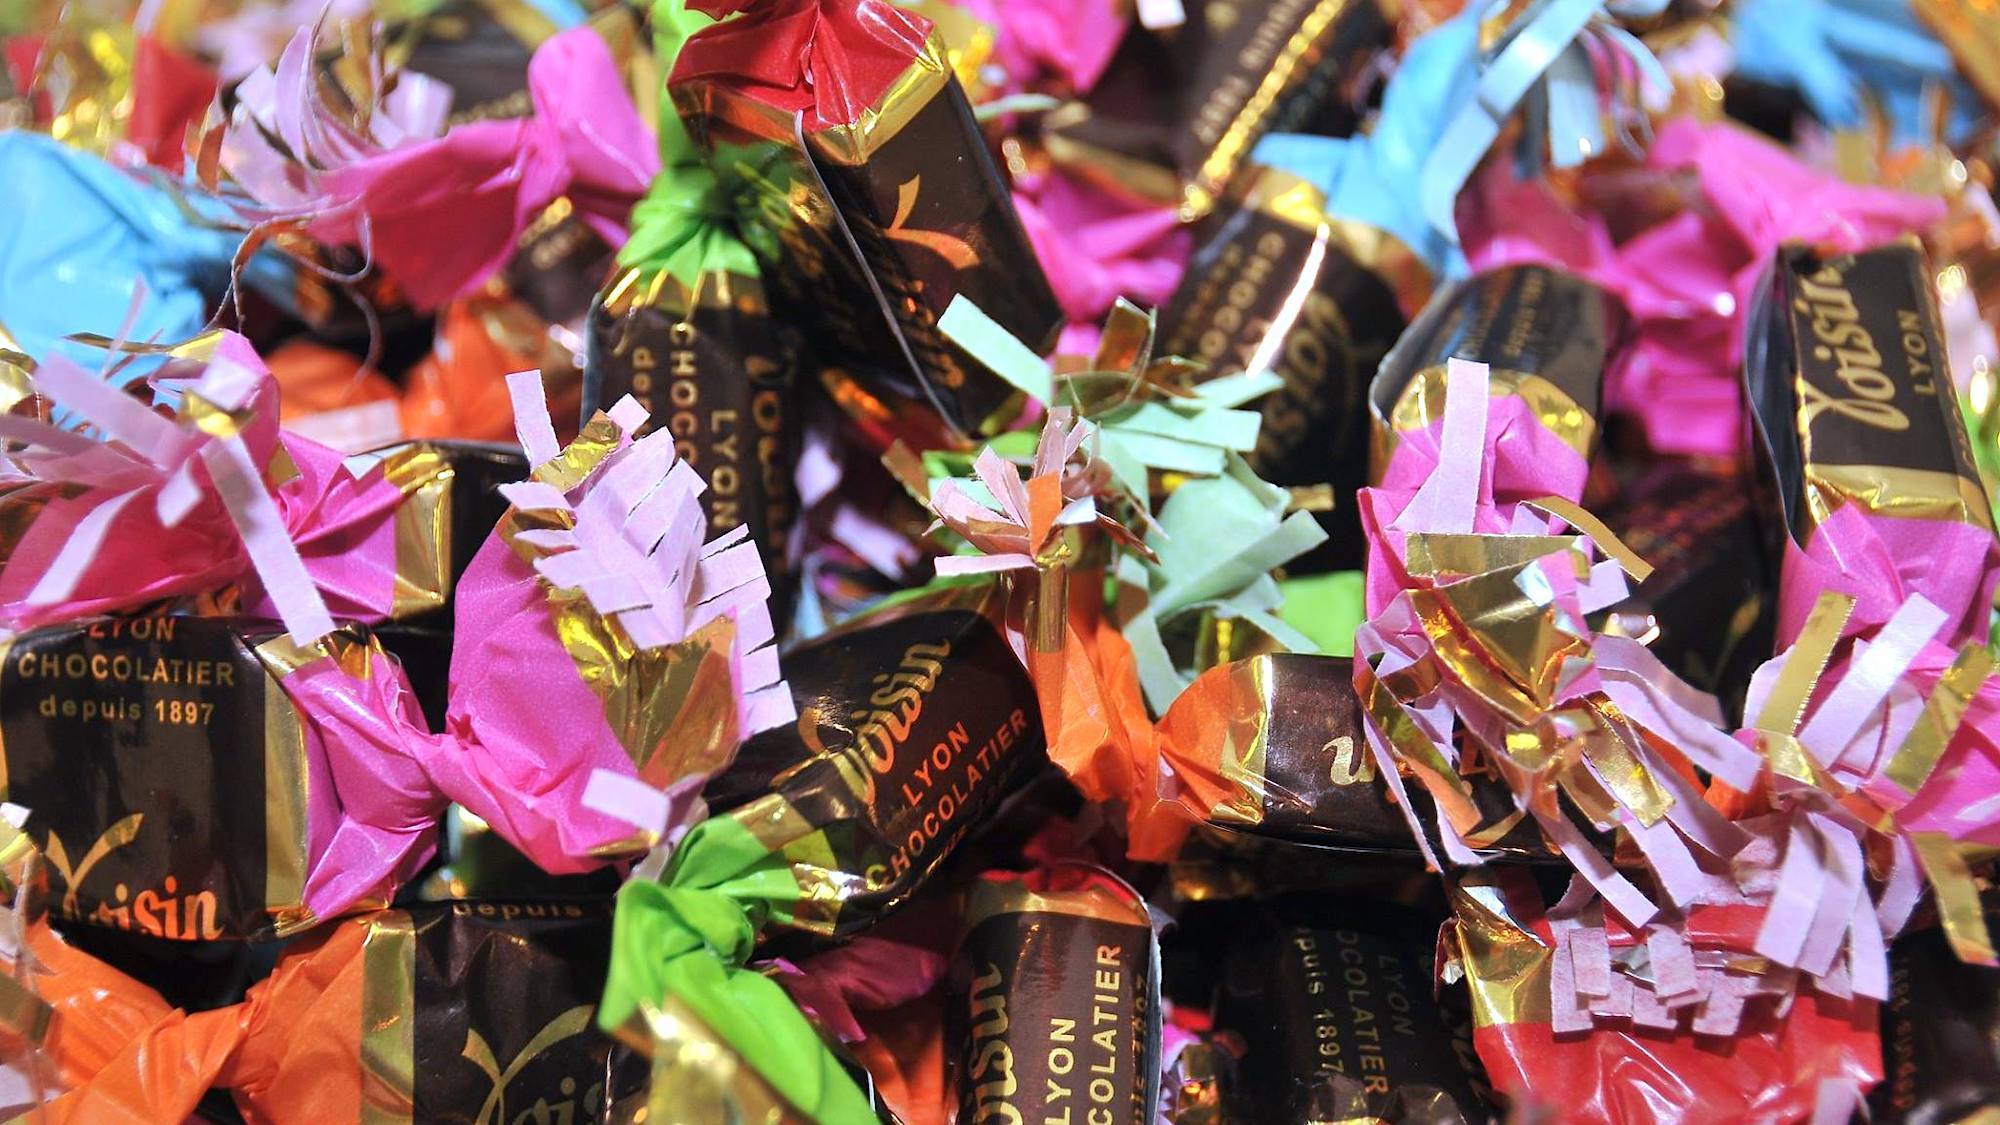 Papillotes Voisin assorties (chocolat) - Voisin chocolatier